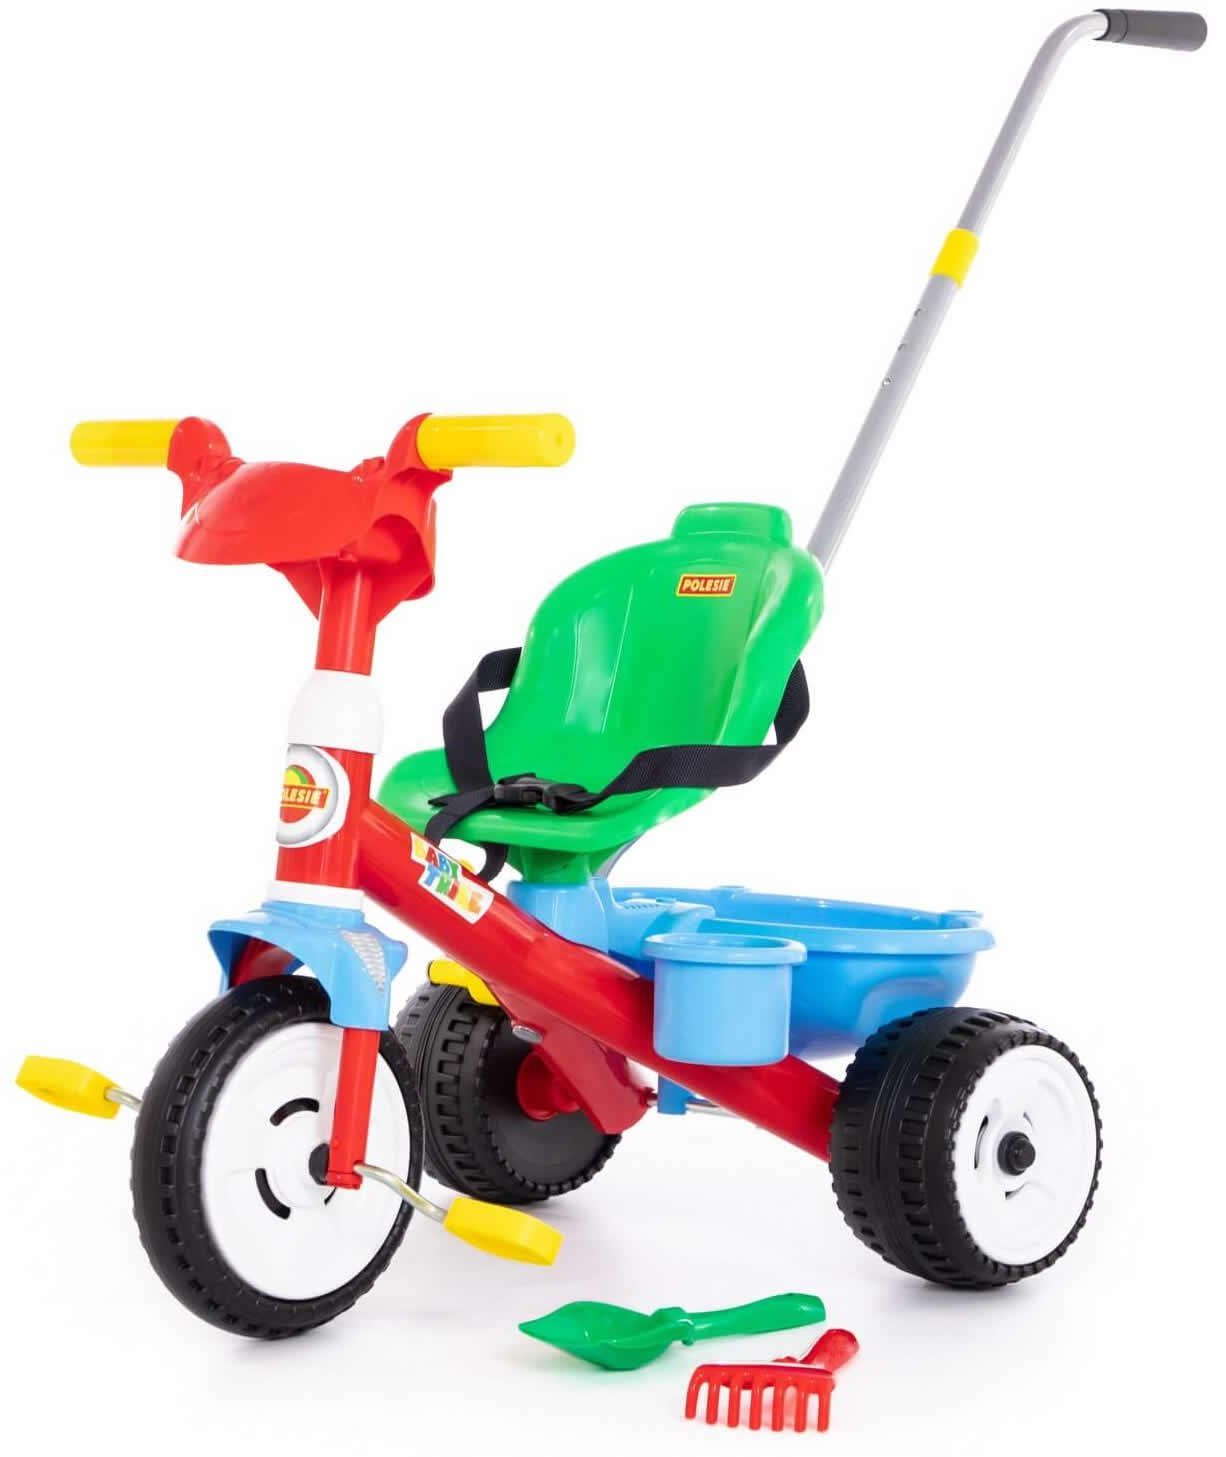 Polesie Dreirad Dreirad Baby Trike m. Mulde 2-tlg. Sand-Set Schubstange Tretfahrzeug